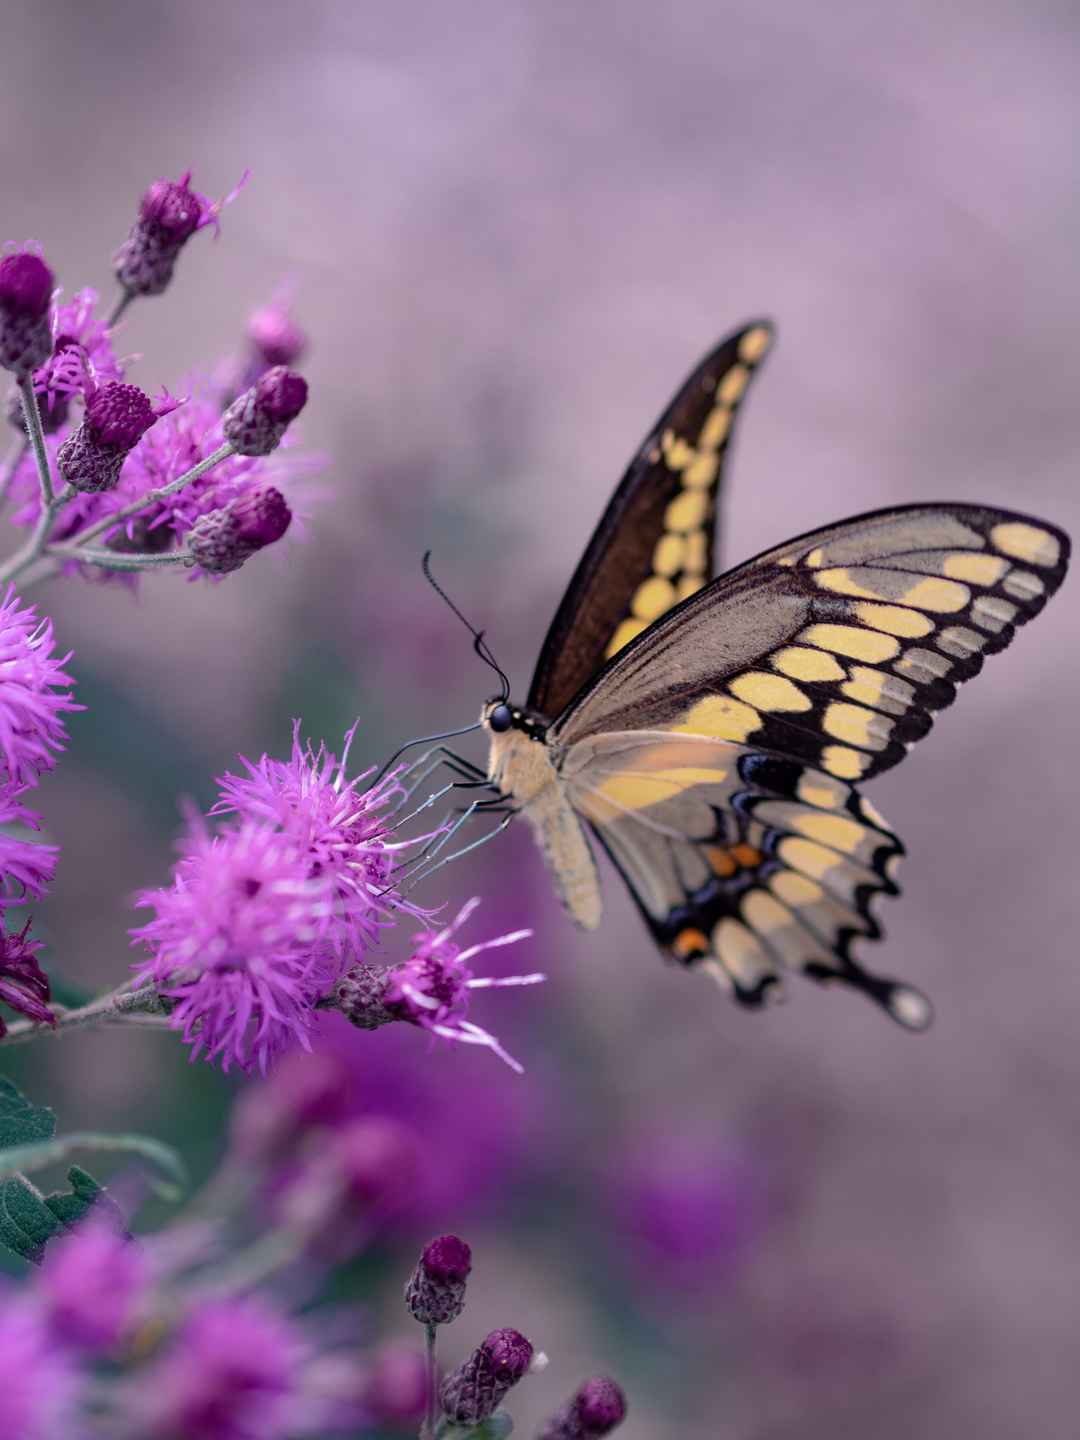 蝴蝶停在紫色花朵上壁纸